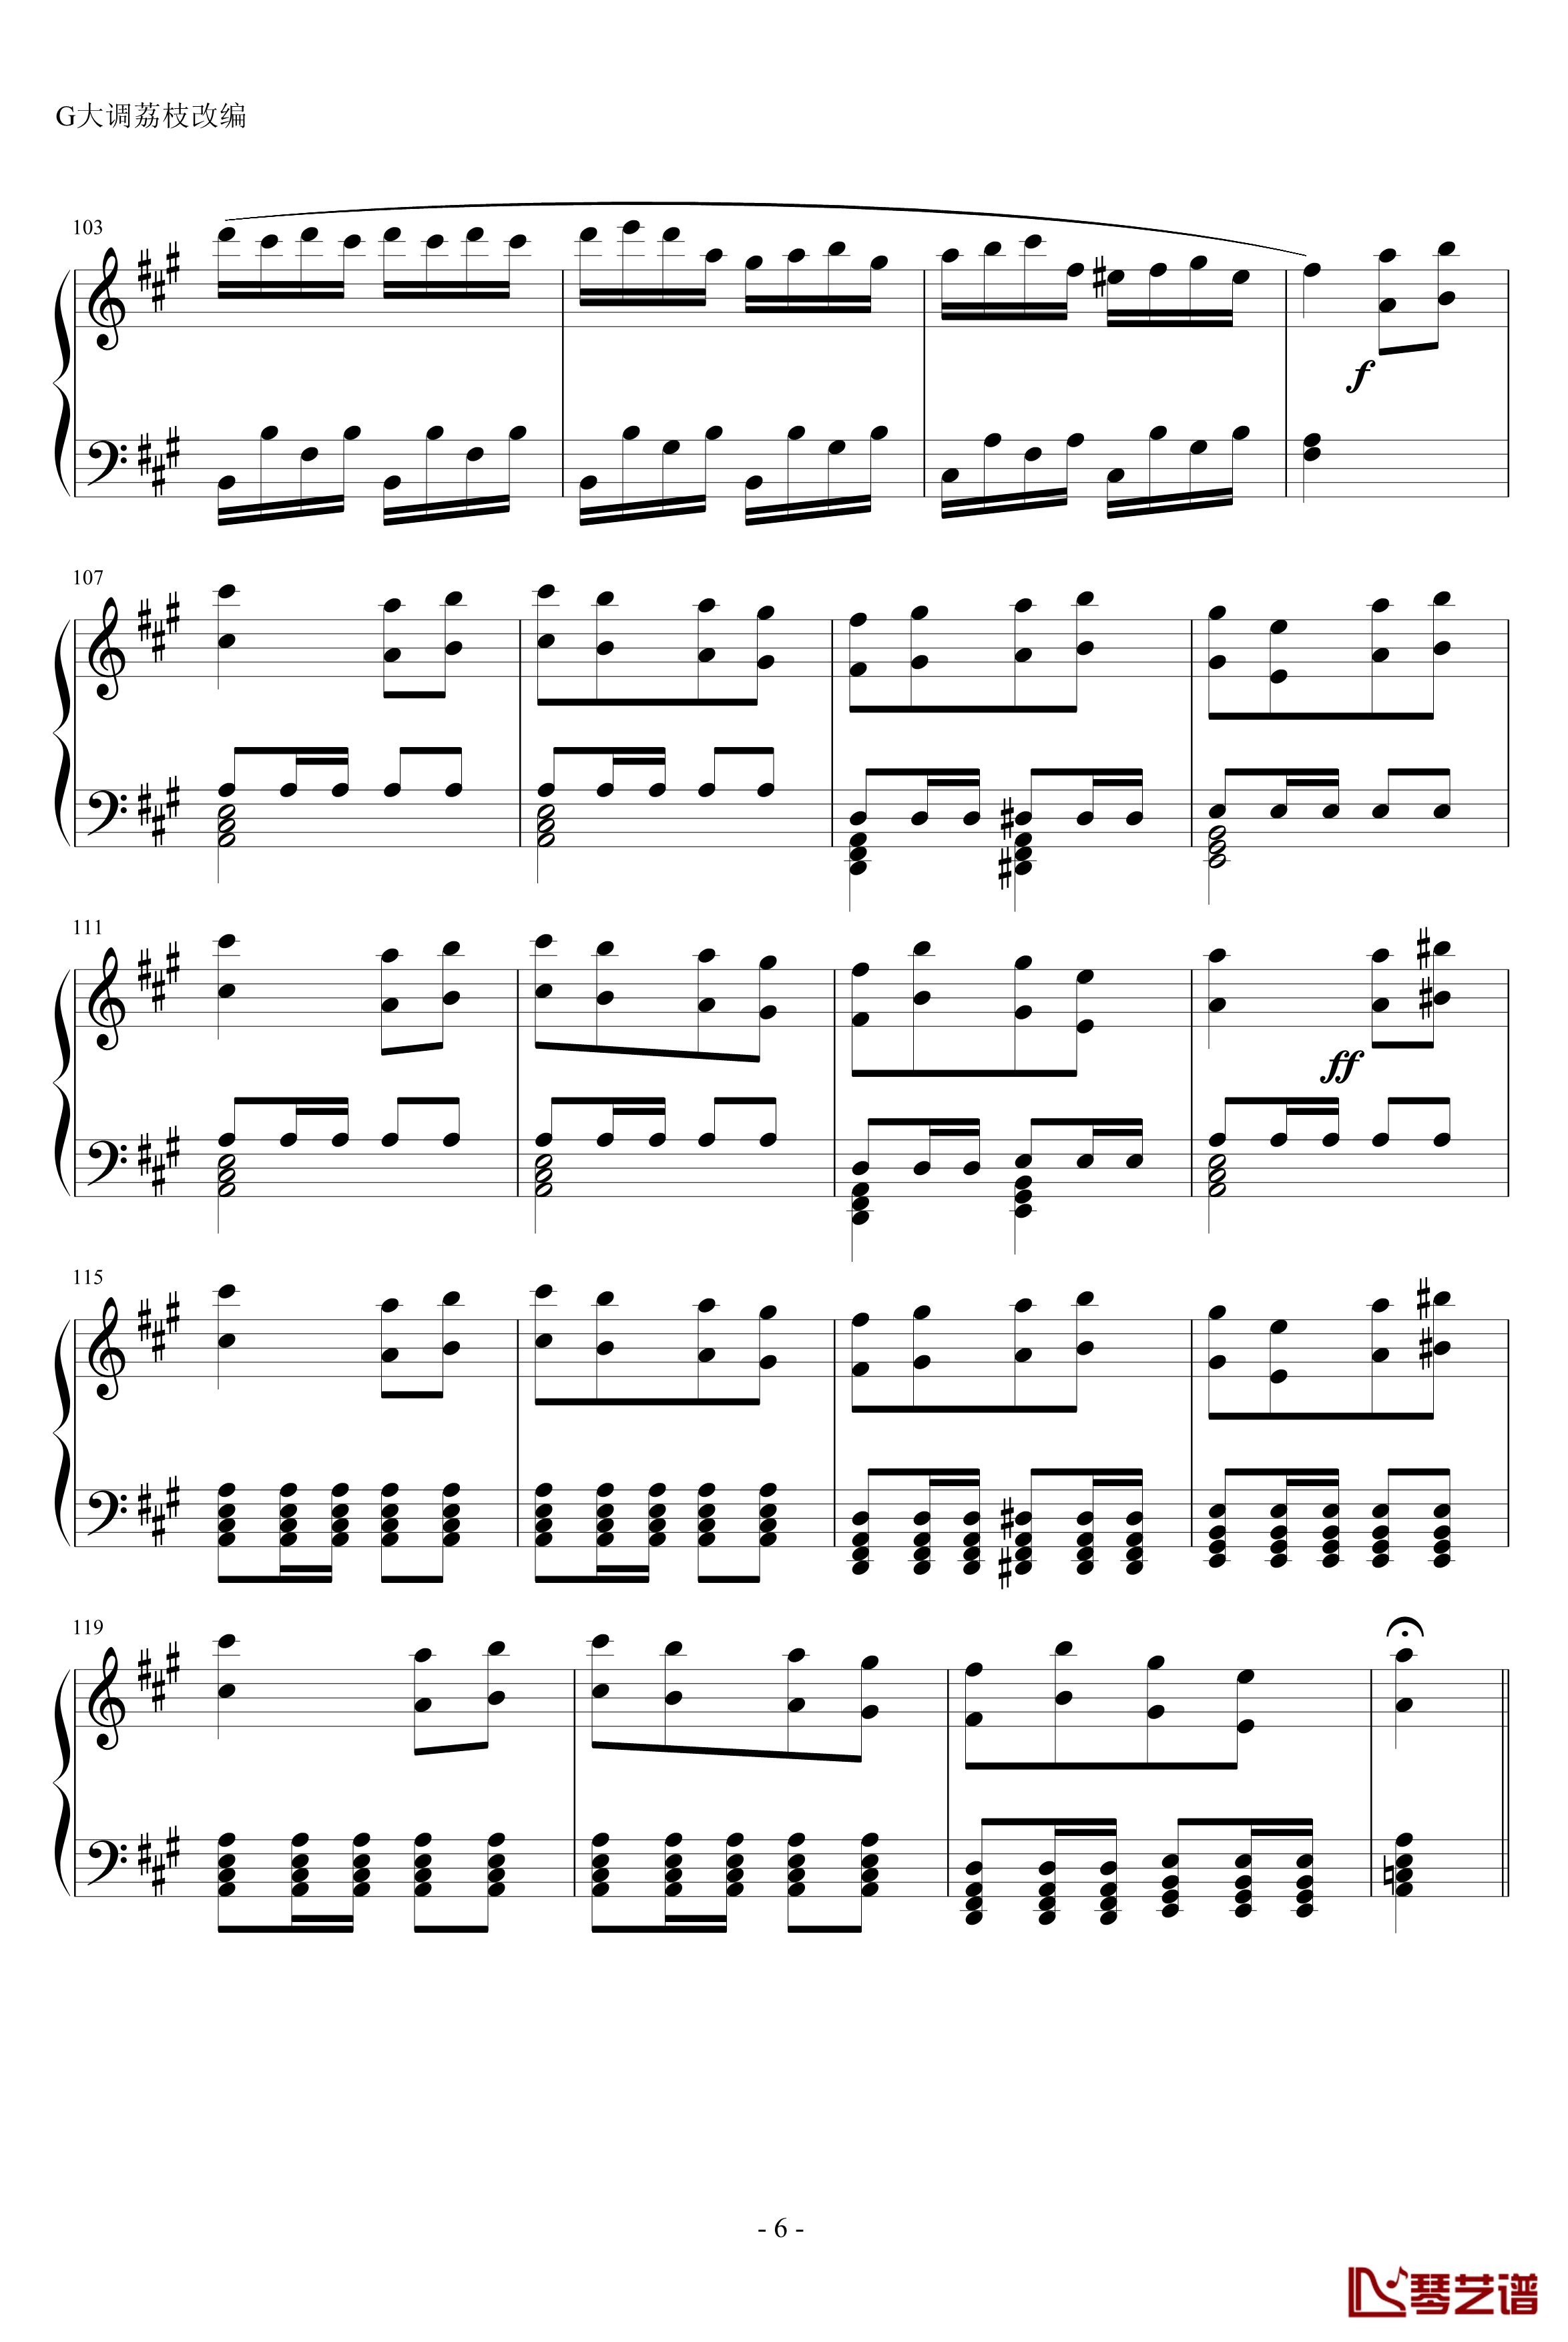 梦幻土耳其钢琴谱-莫扎特